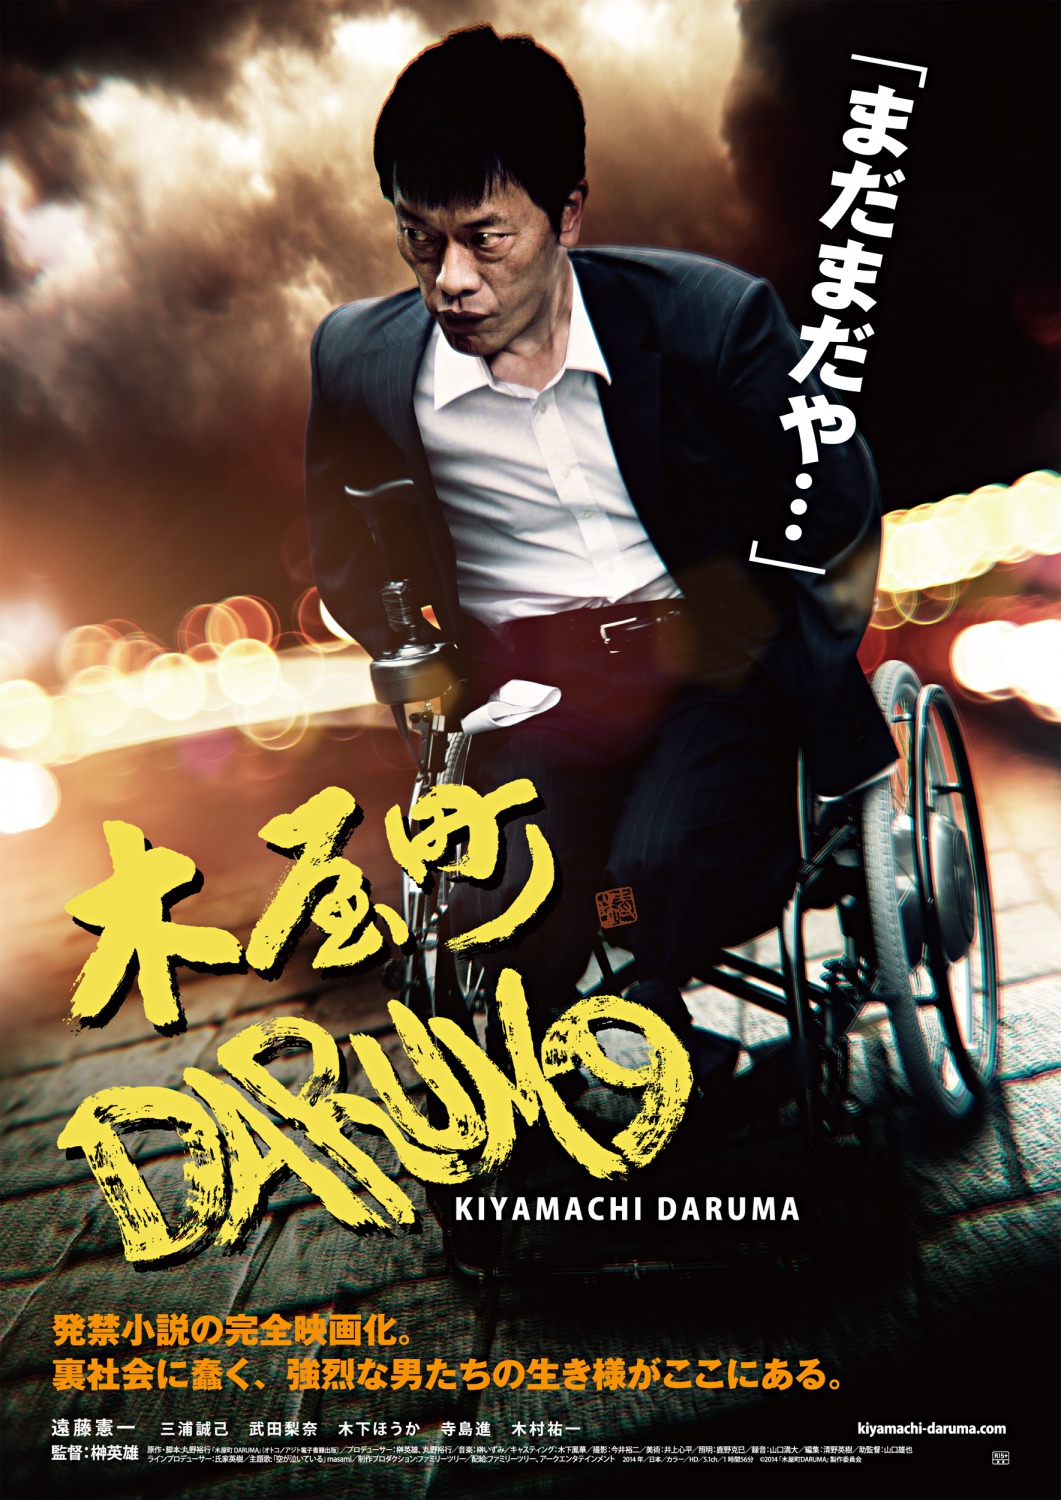 Extra Large Movie Poster Image for Kiyamachi Daruma 